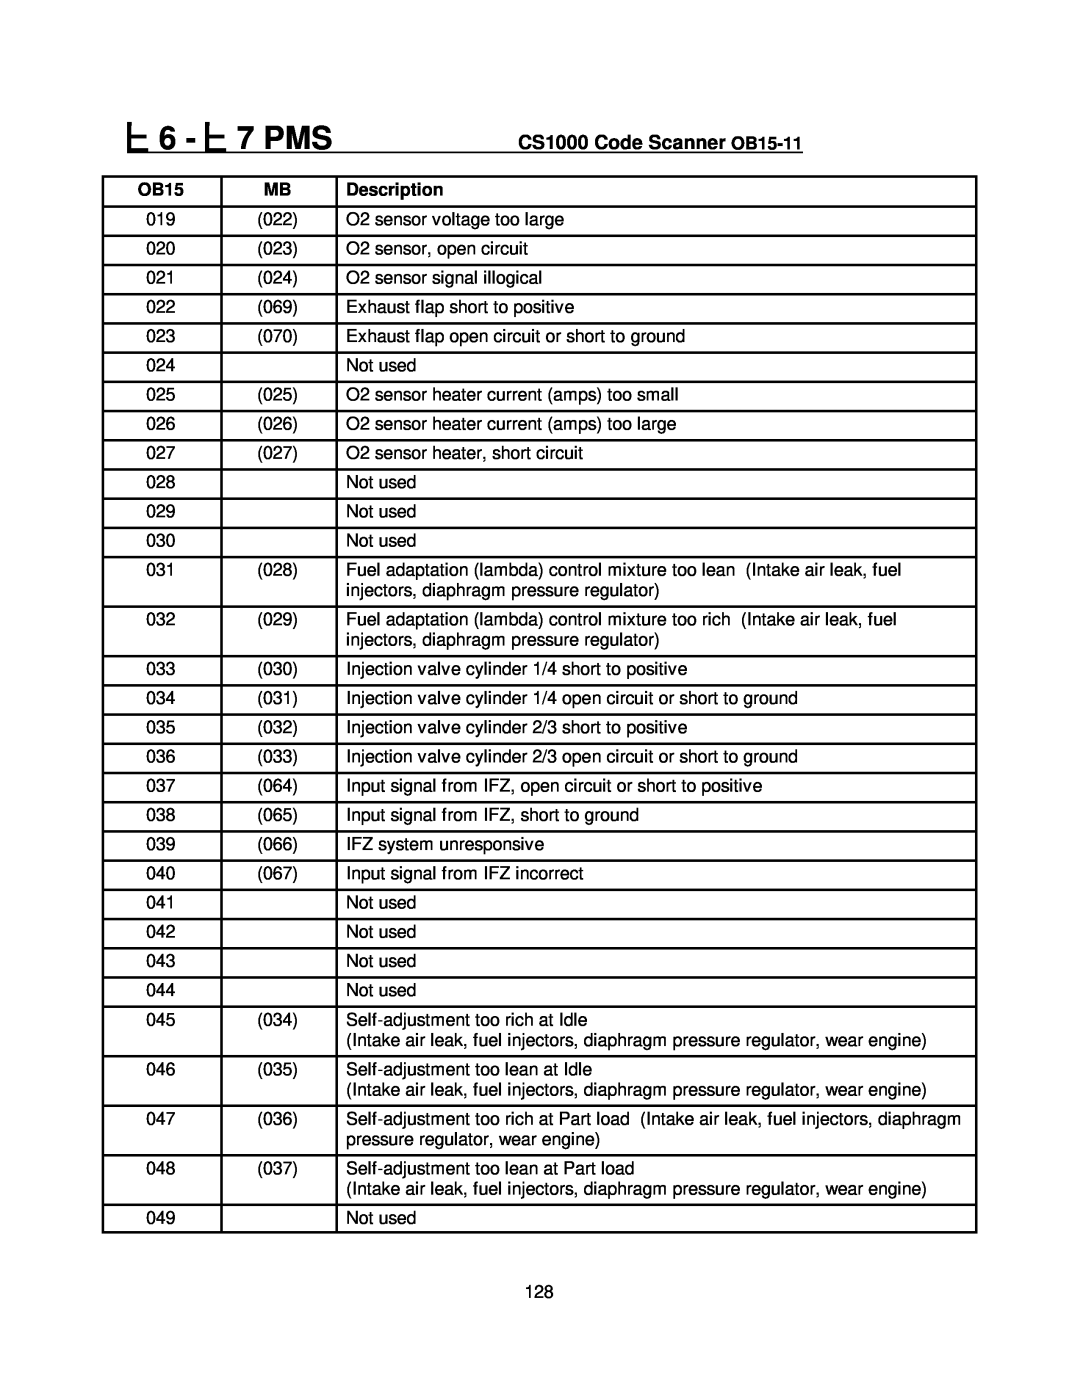 Mercedes-Benz manual 6 - 7 PMS, CS1000 Code Scanner OB15-11, Description 